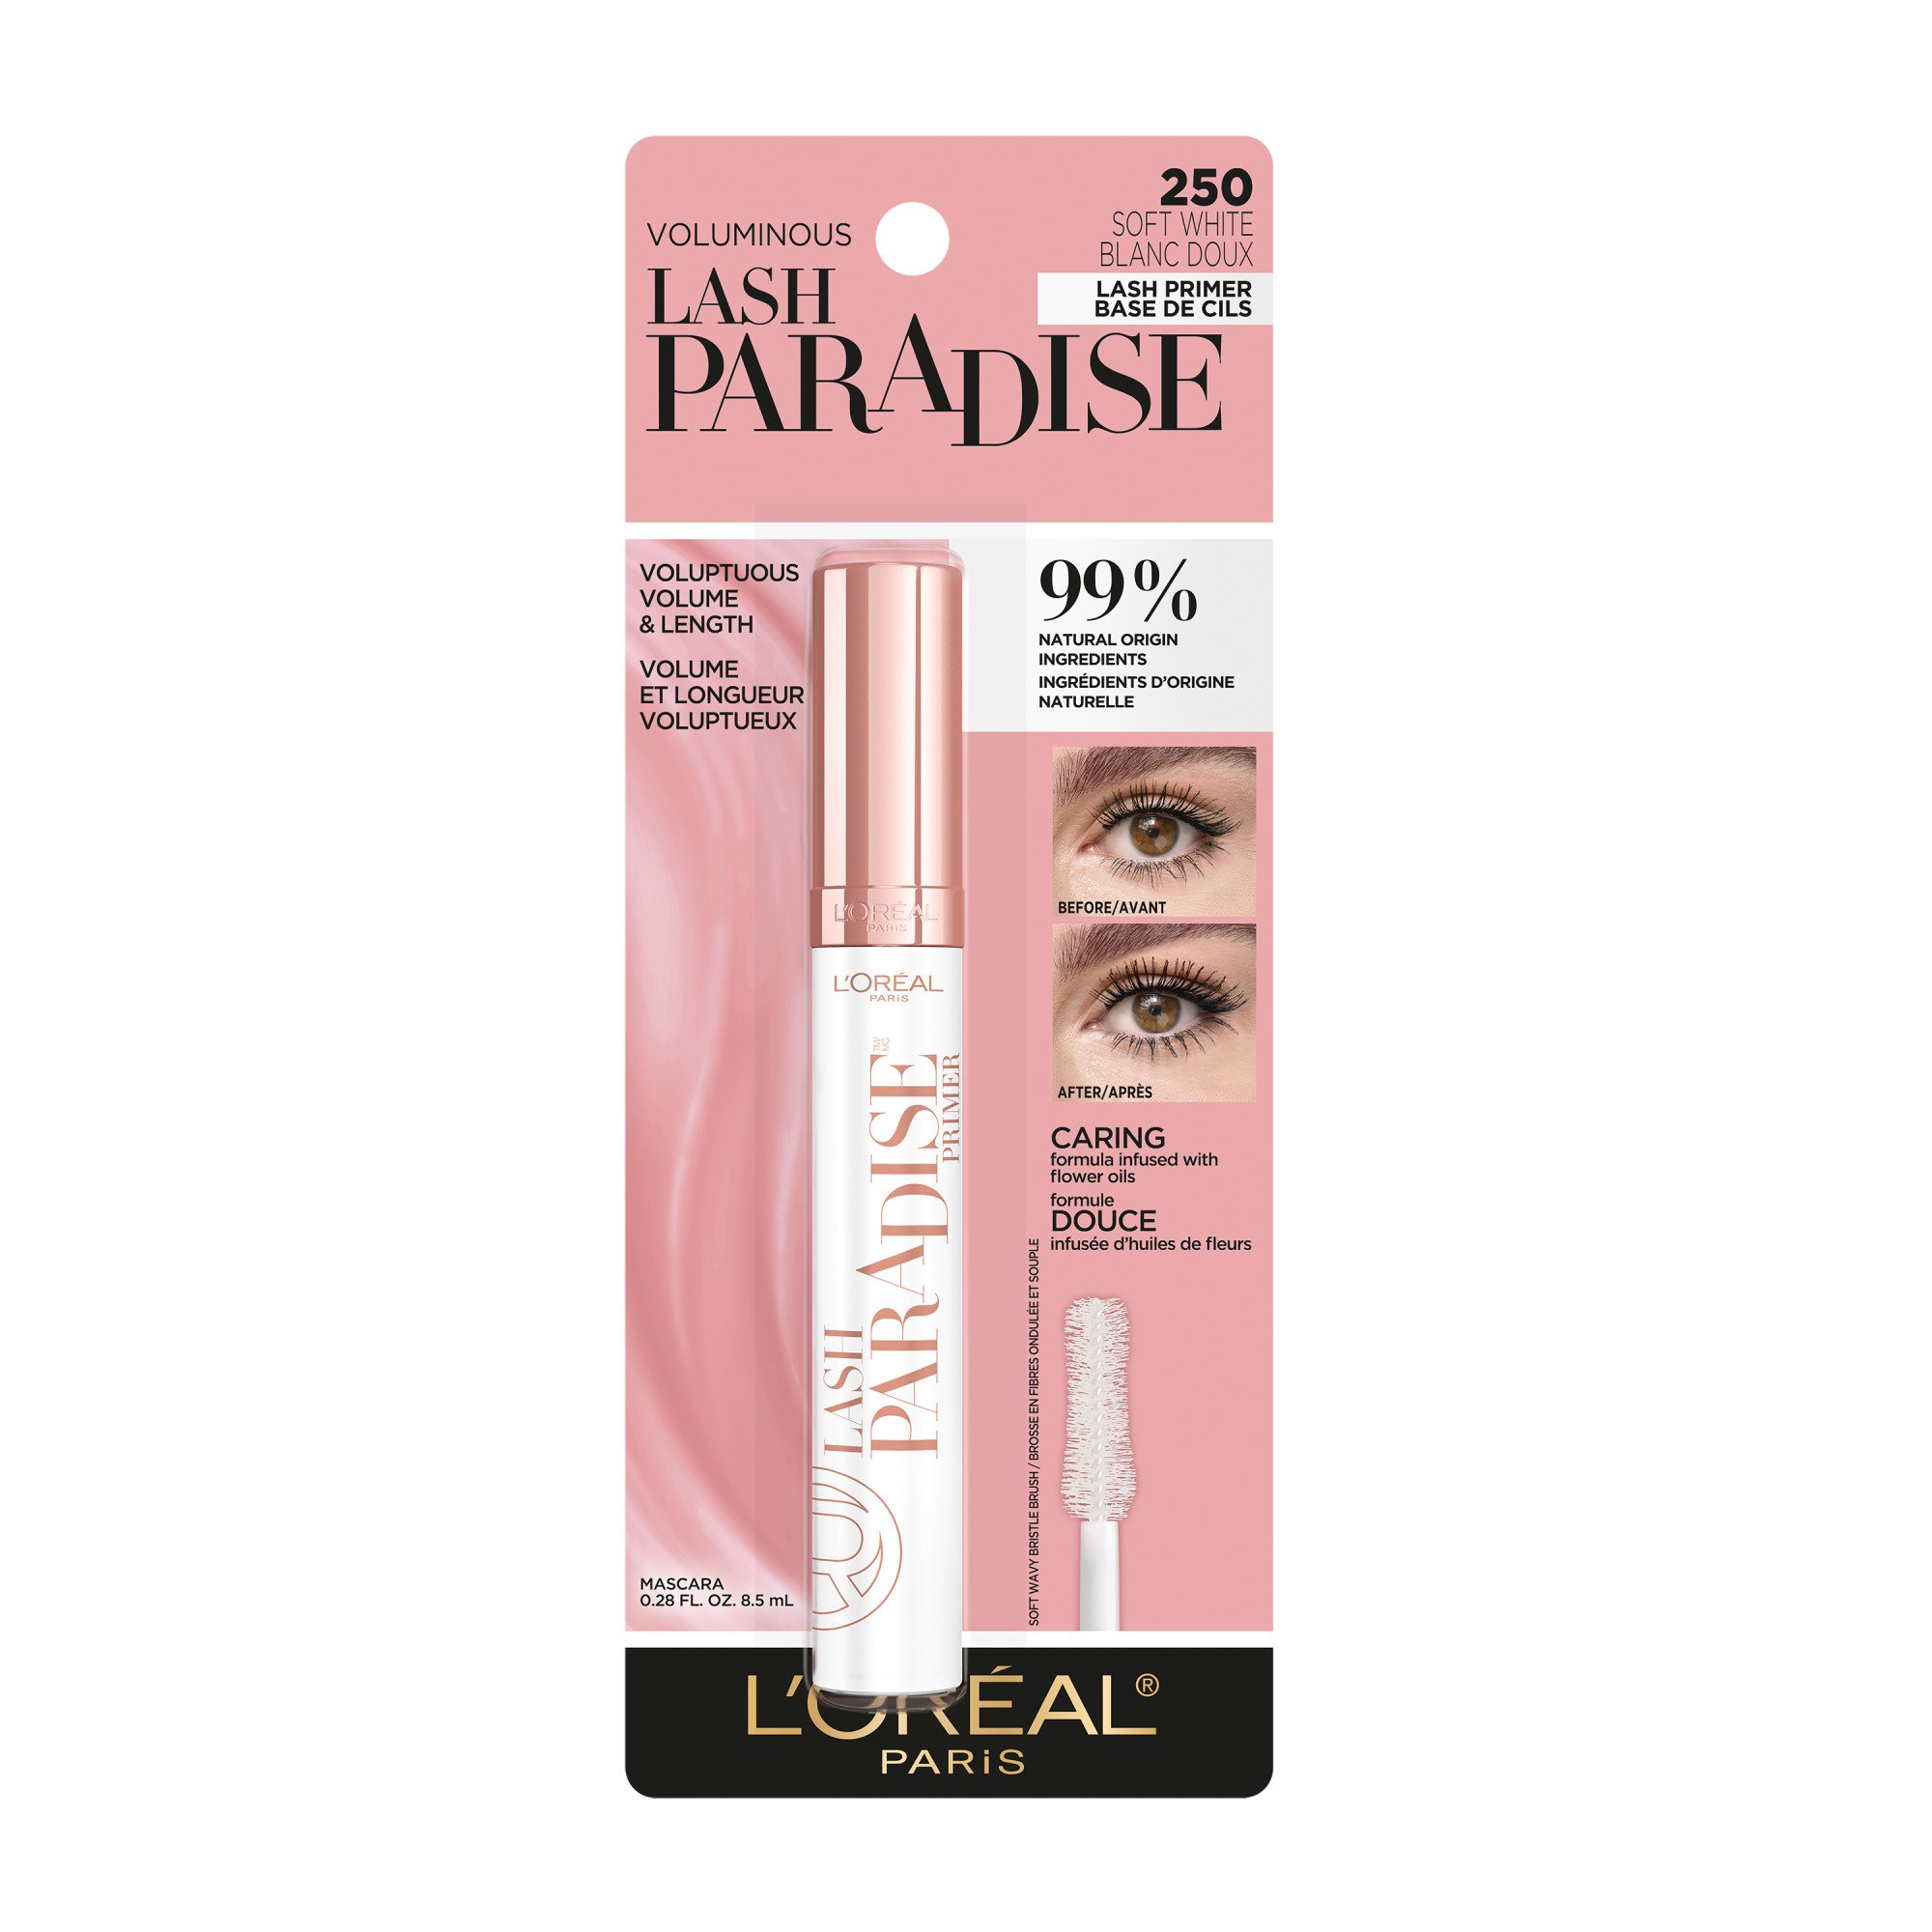 L'Oréal Paris Voluminous Paradise Mascara - Soft white - Mascara at H-E-B